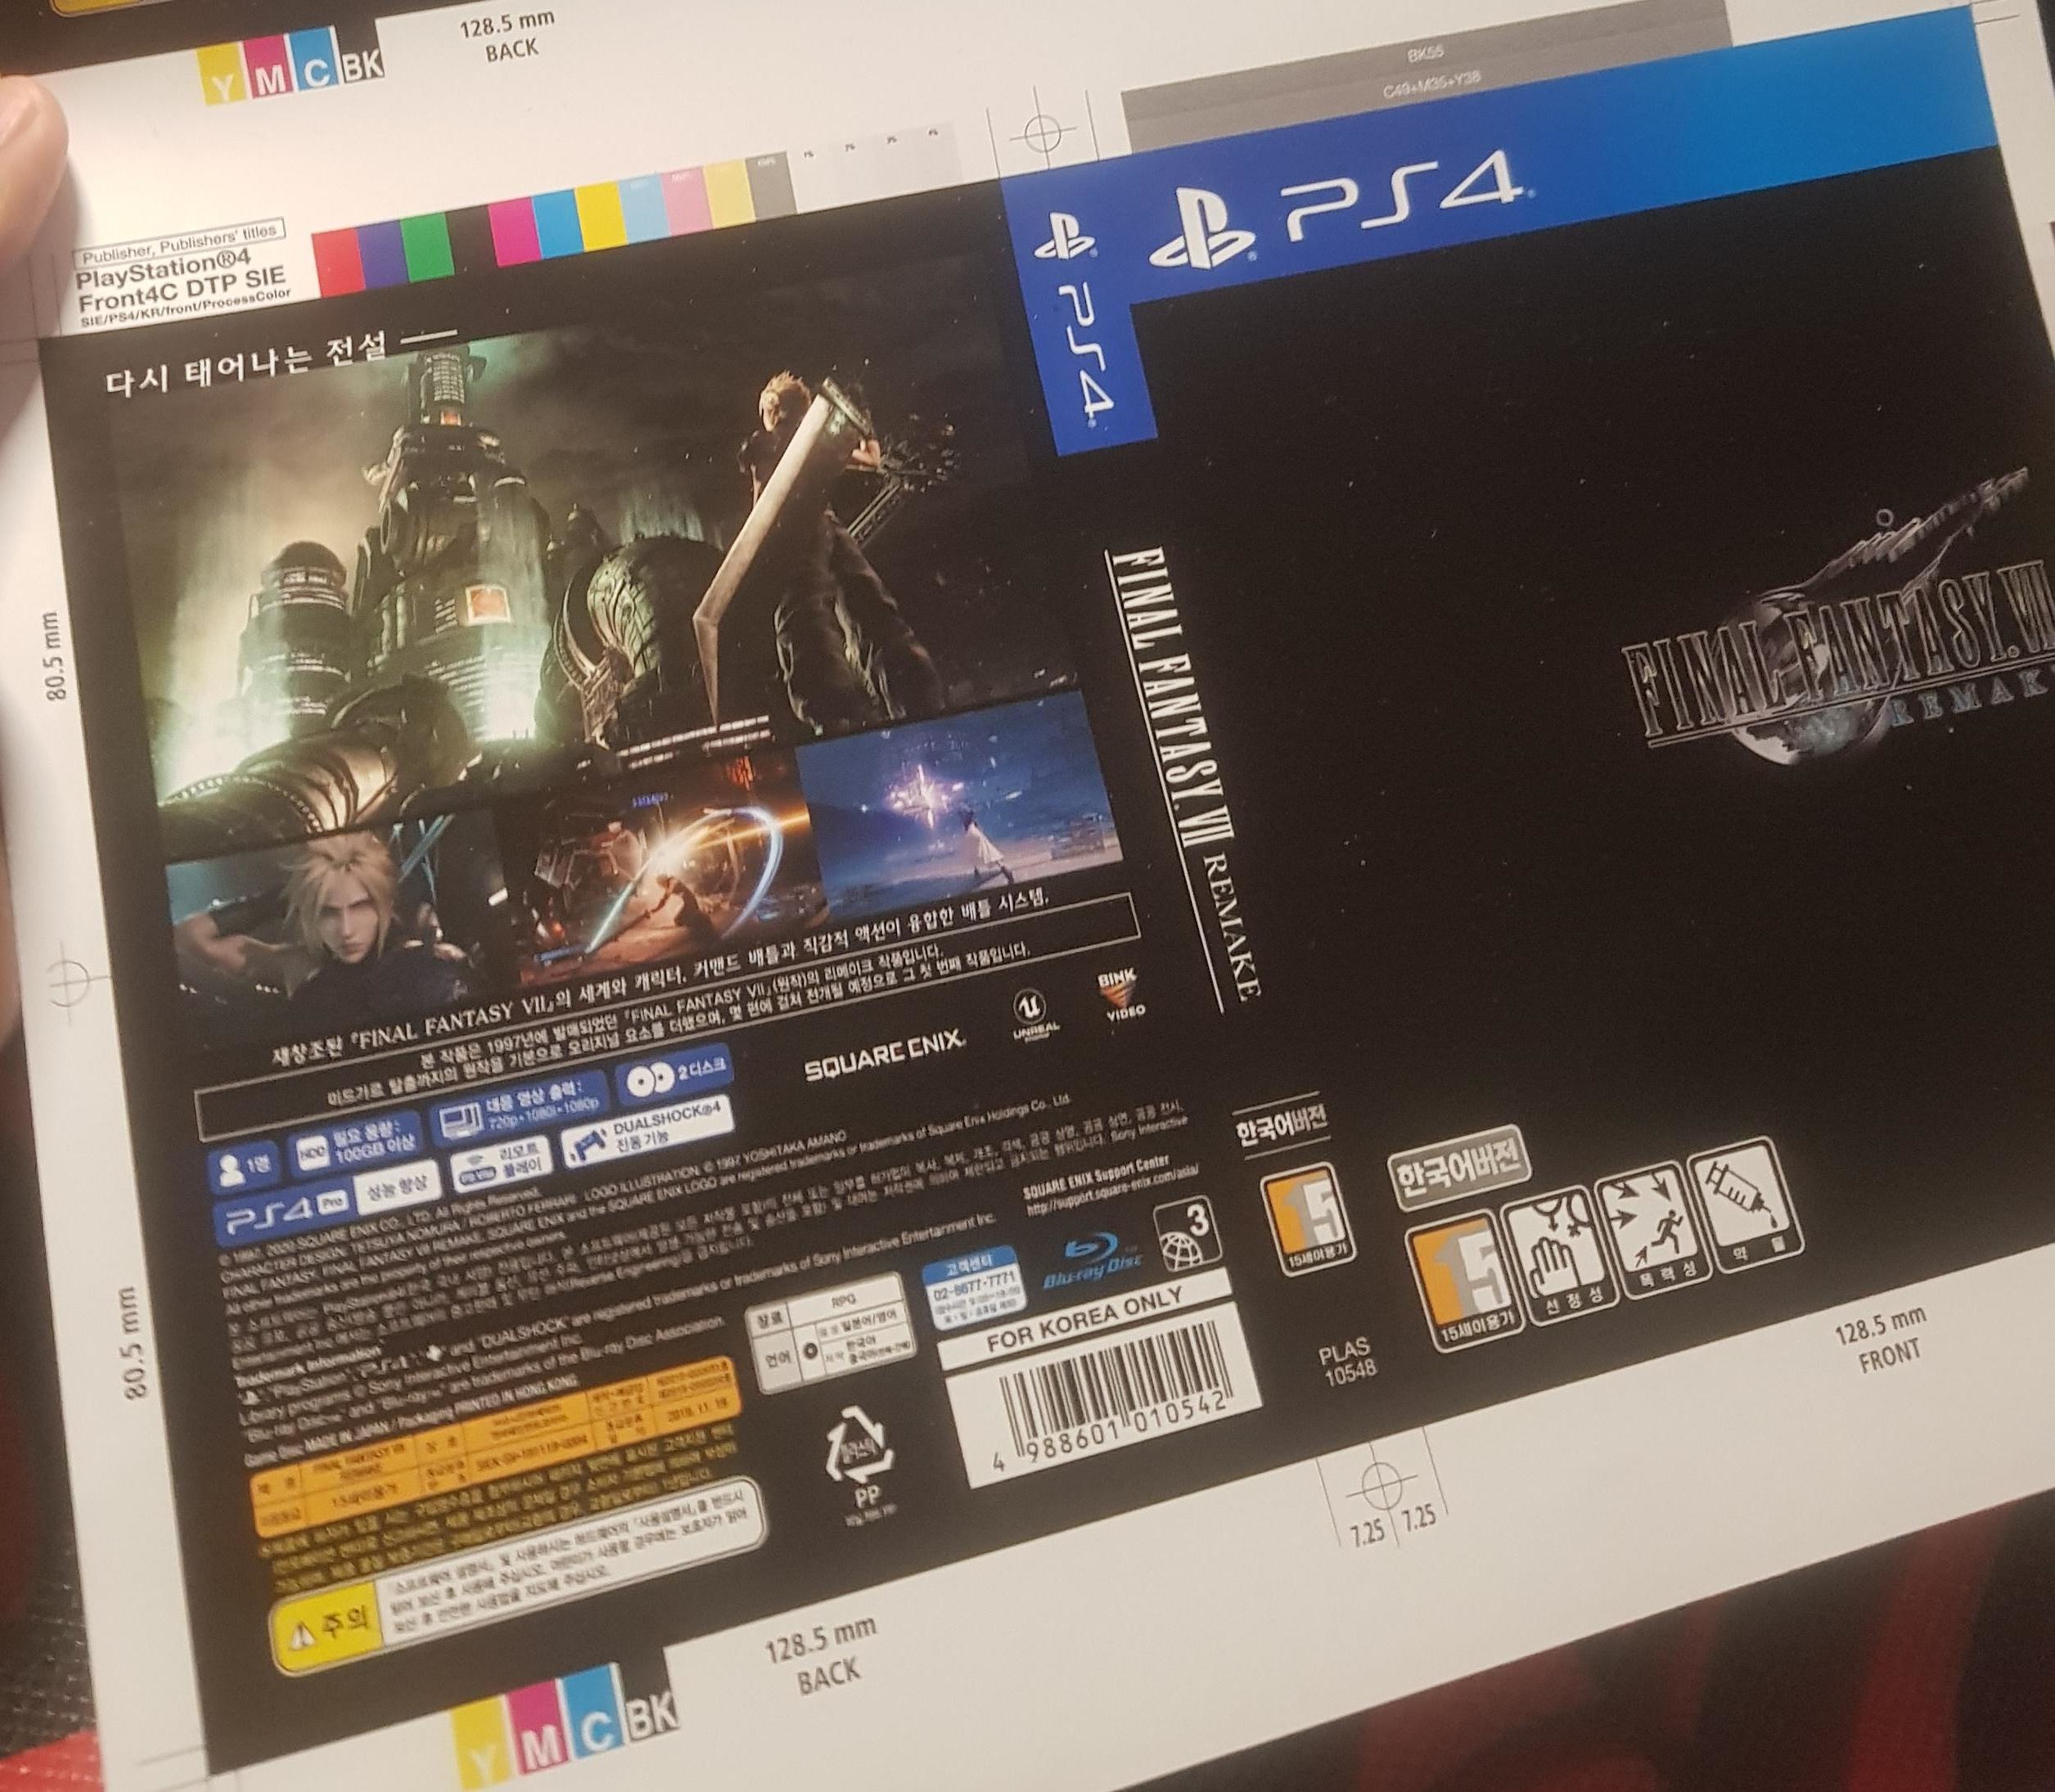 Armstrong Ære Beskrivende Final Fantasy VII Remake》需要100 GB 硬碟儲存空間- GameplayHK